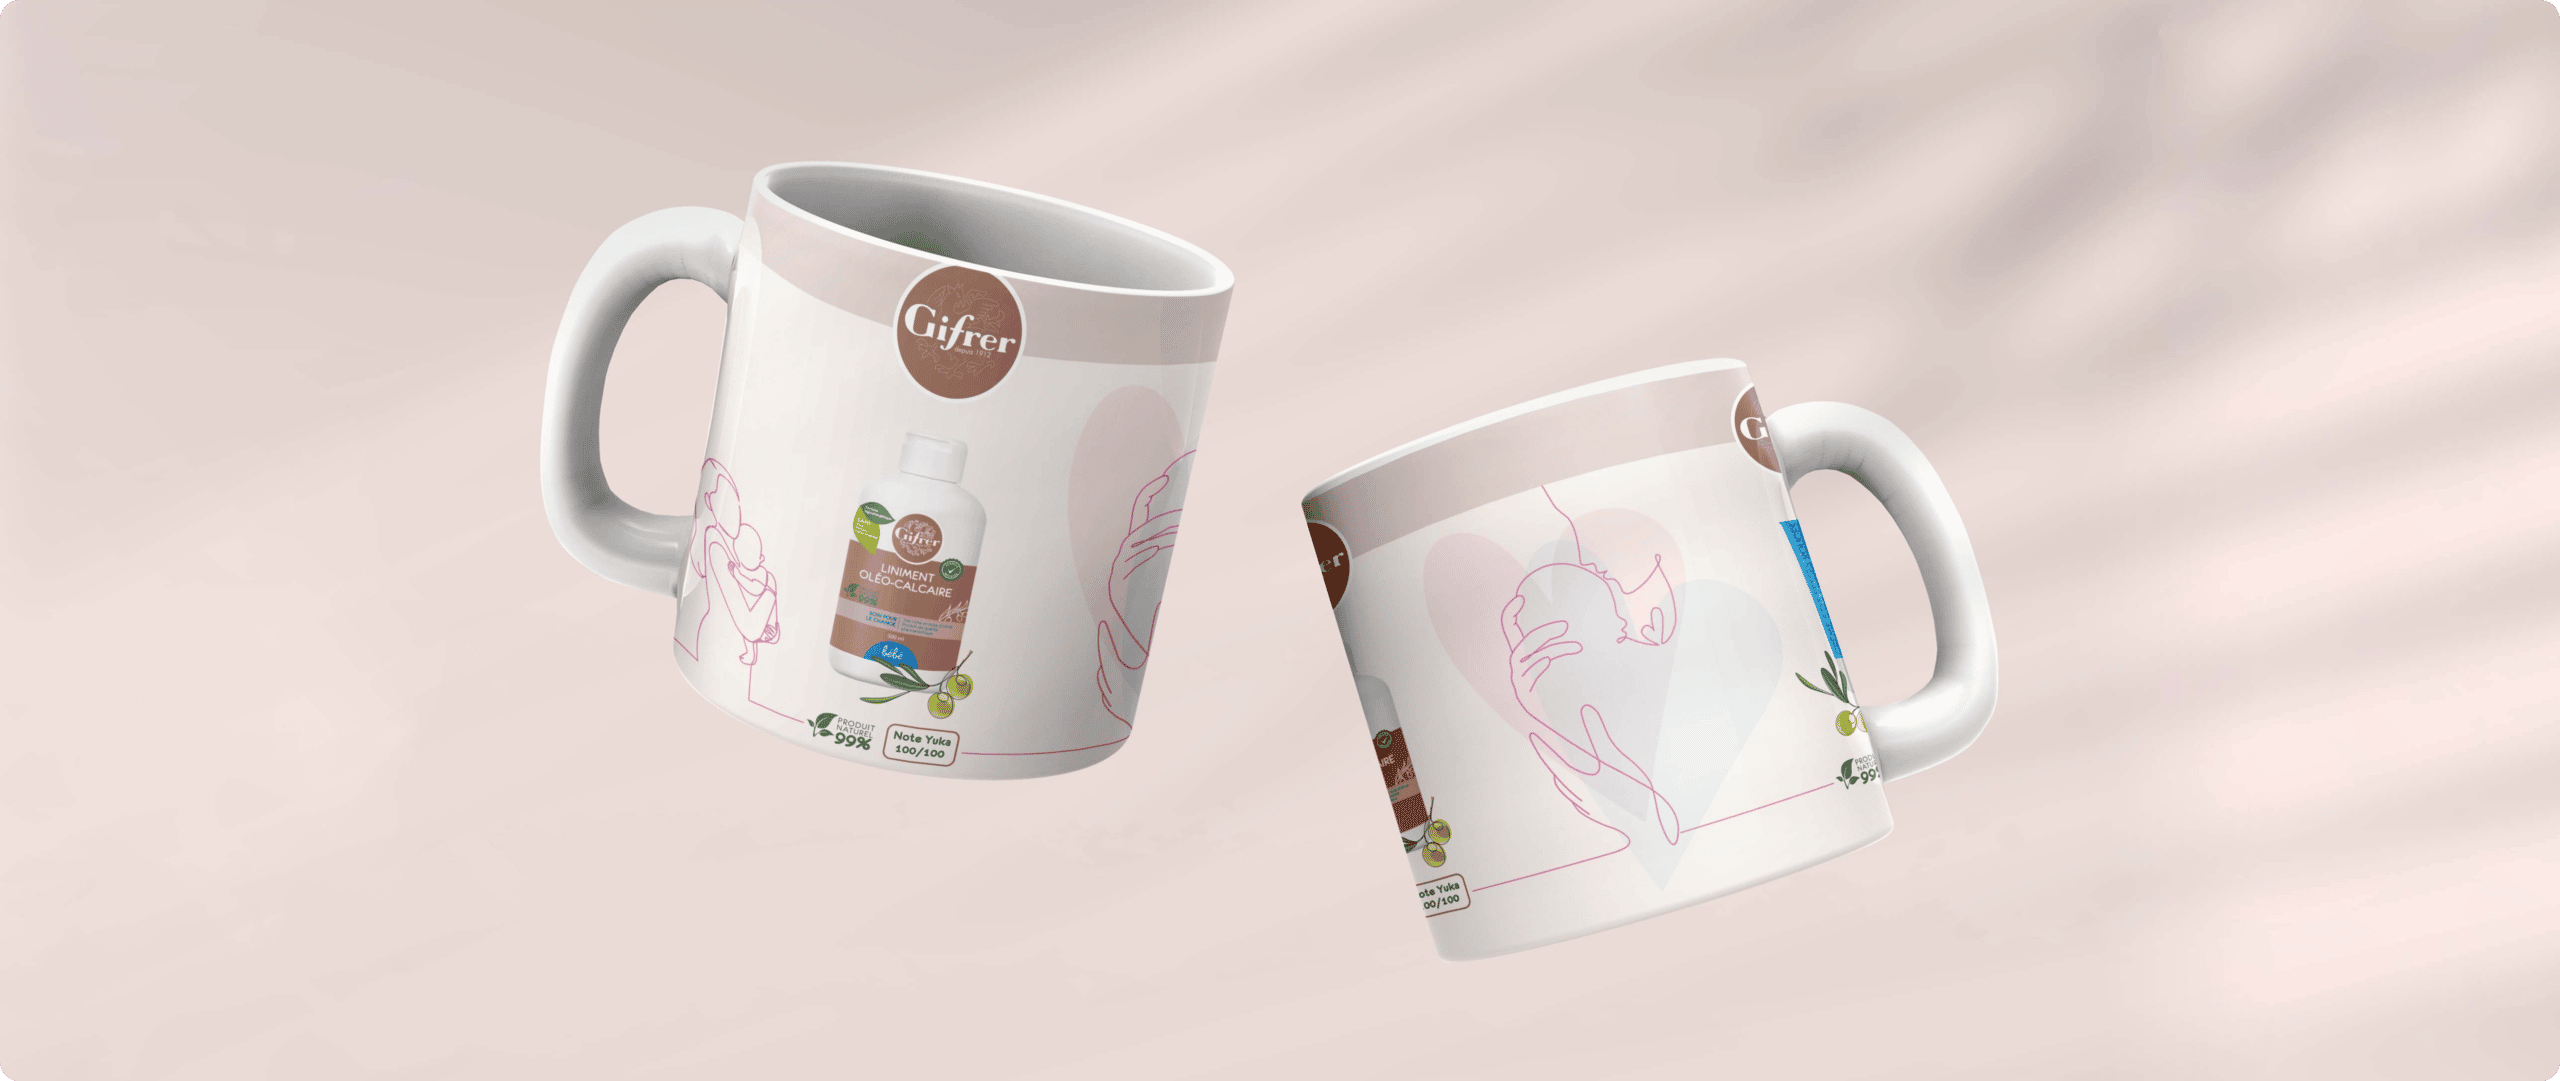 coxi-agence-communication-gifrer-tasse-mug